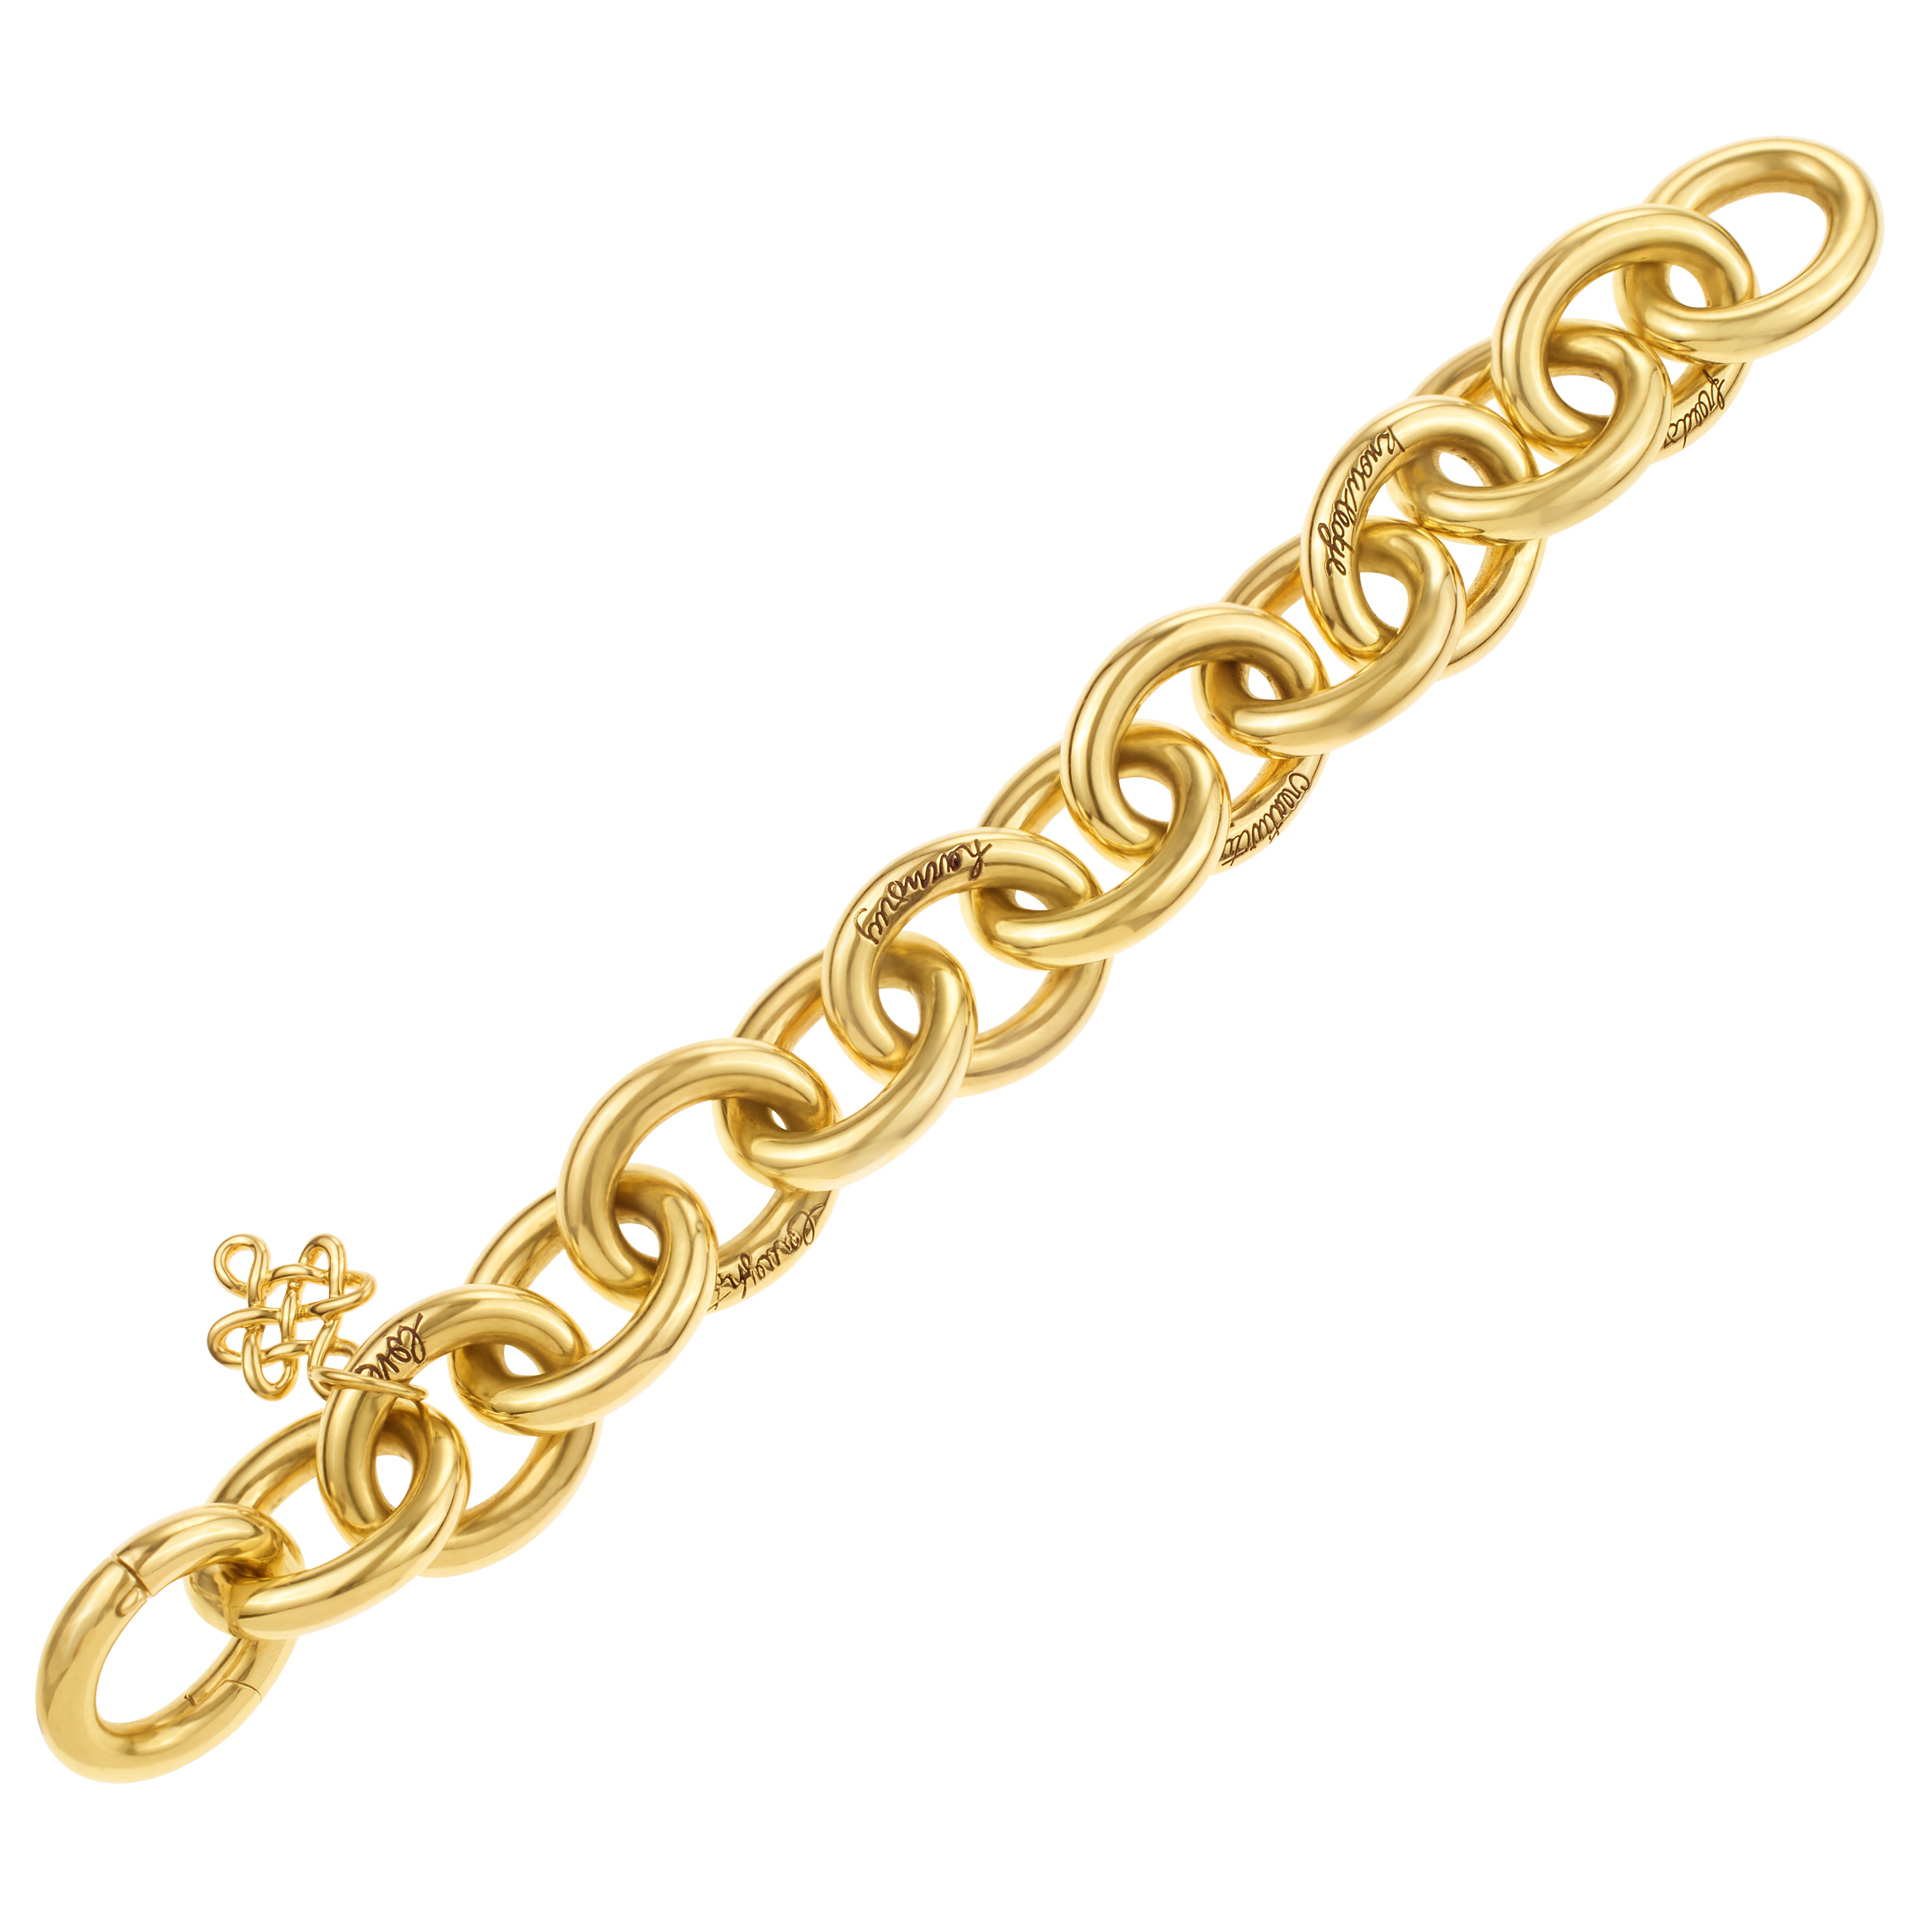 Diane von Furstenberg by H. Stern Sutra bracelet in 18k image 1